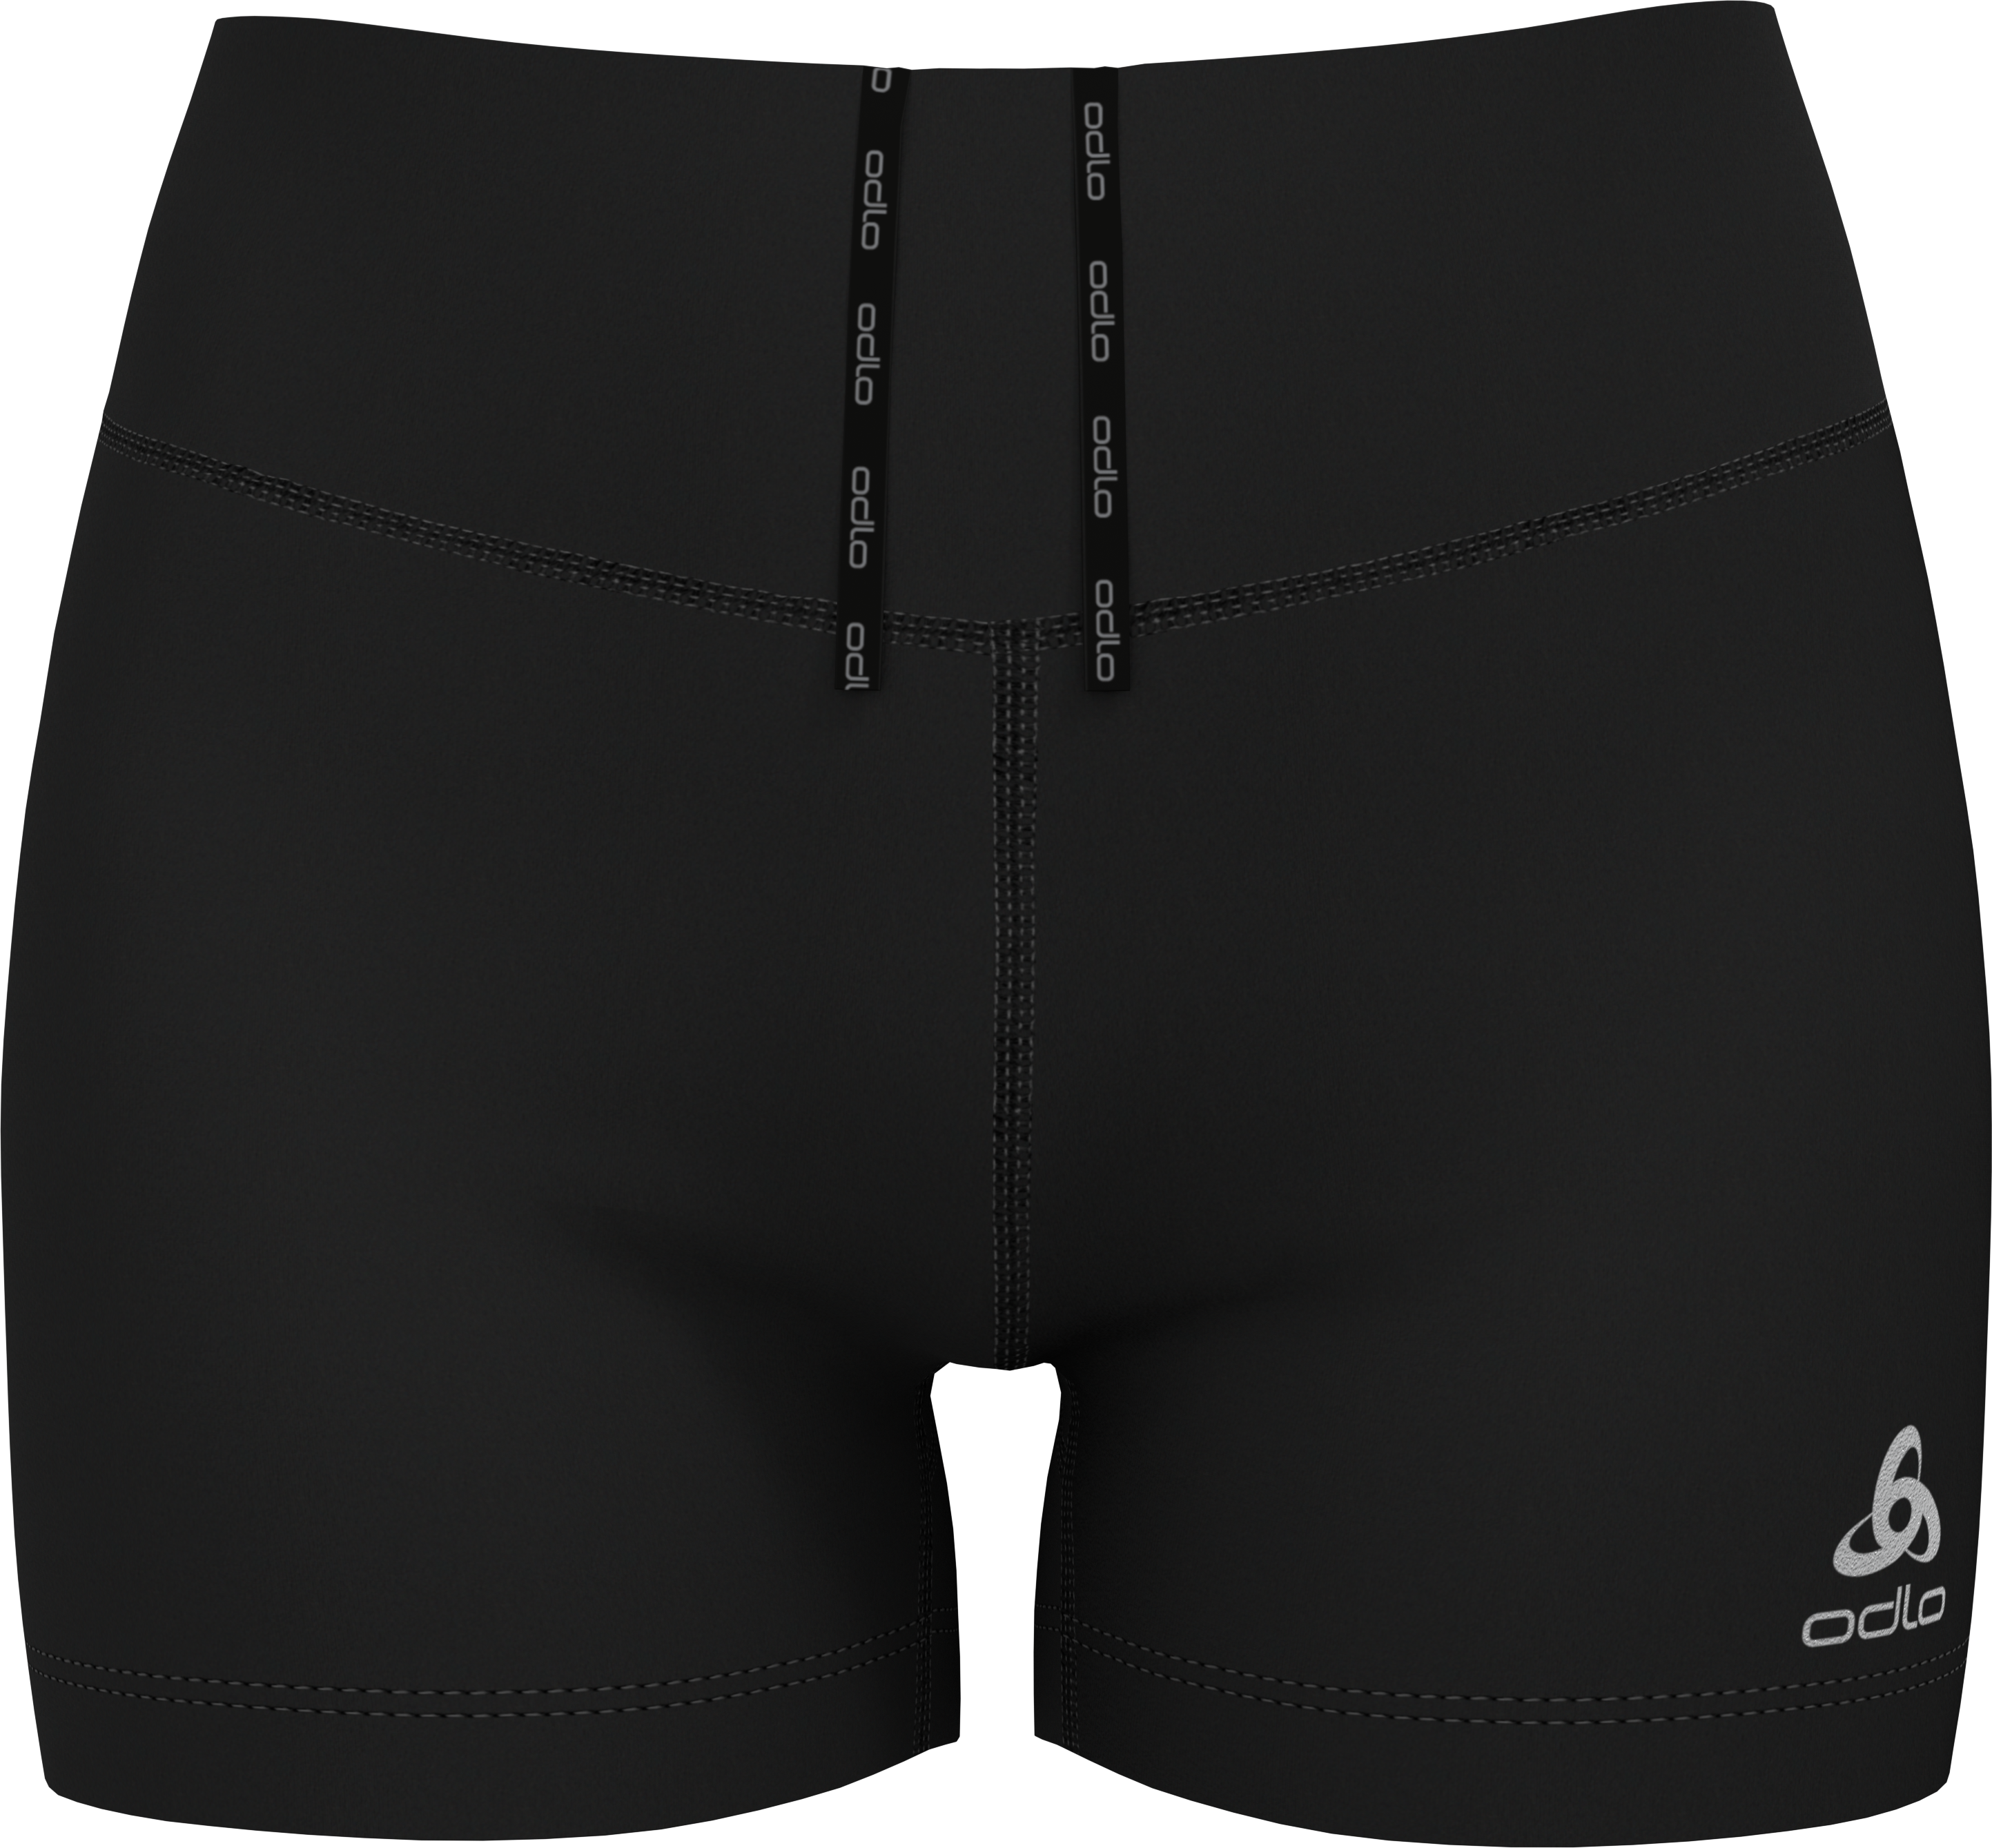 Odlo Women’s The Essential Sprinter Shorts Black